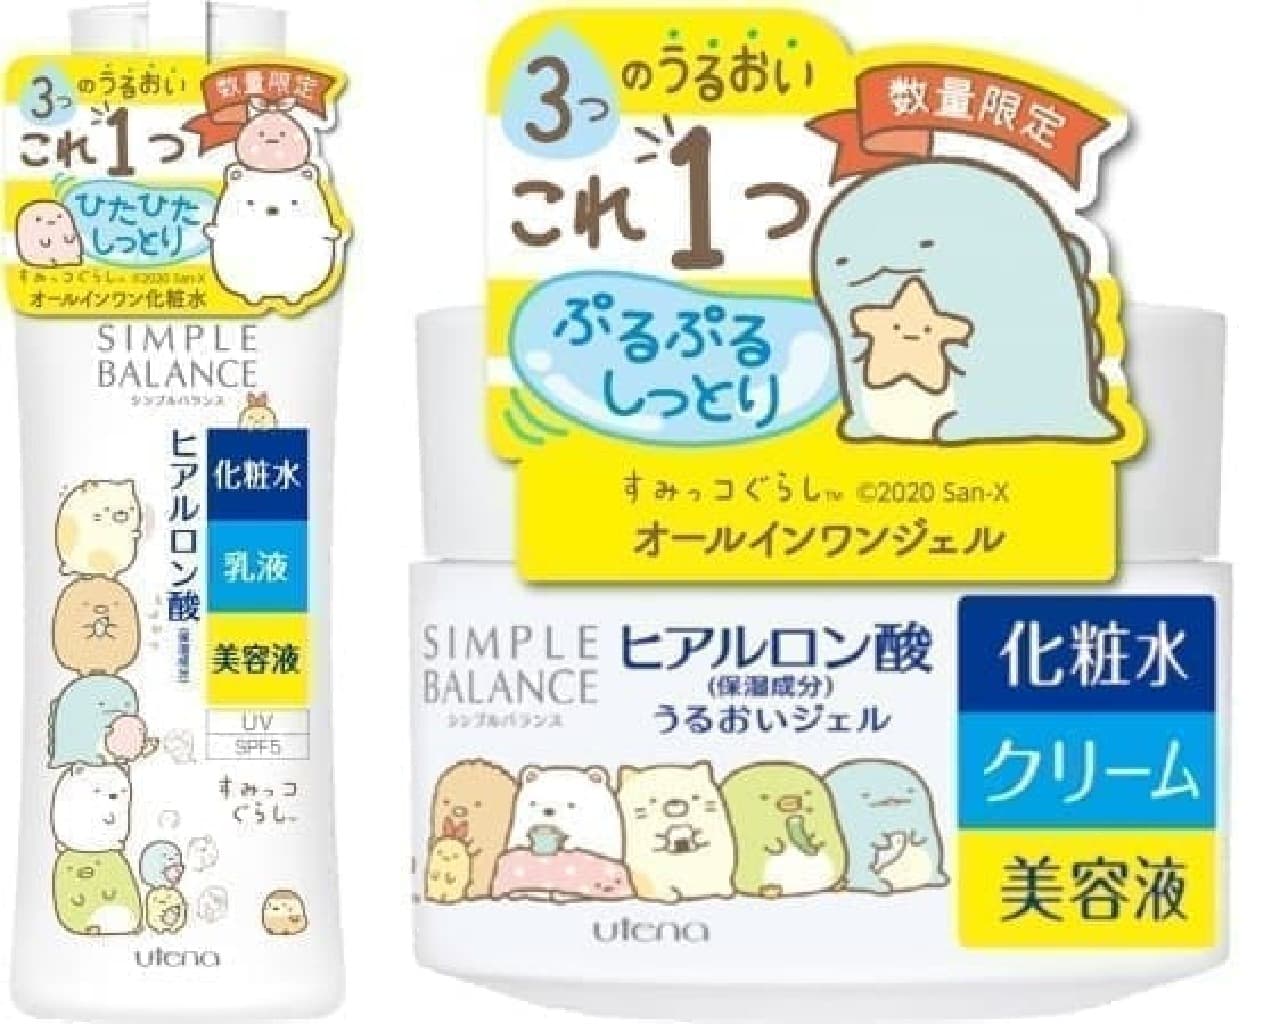 Simple balance of Sumikko Gurashi design "Moisturizing lotion" "Moisturizing gel"